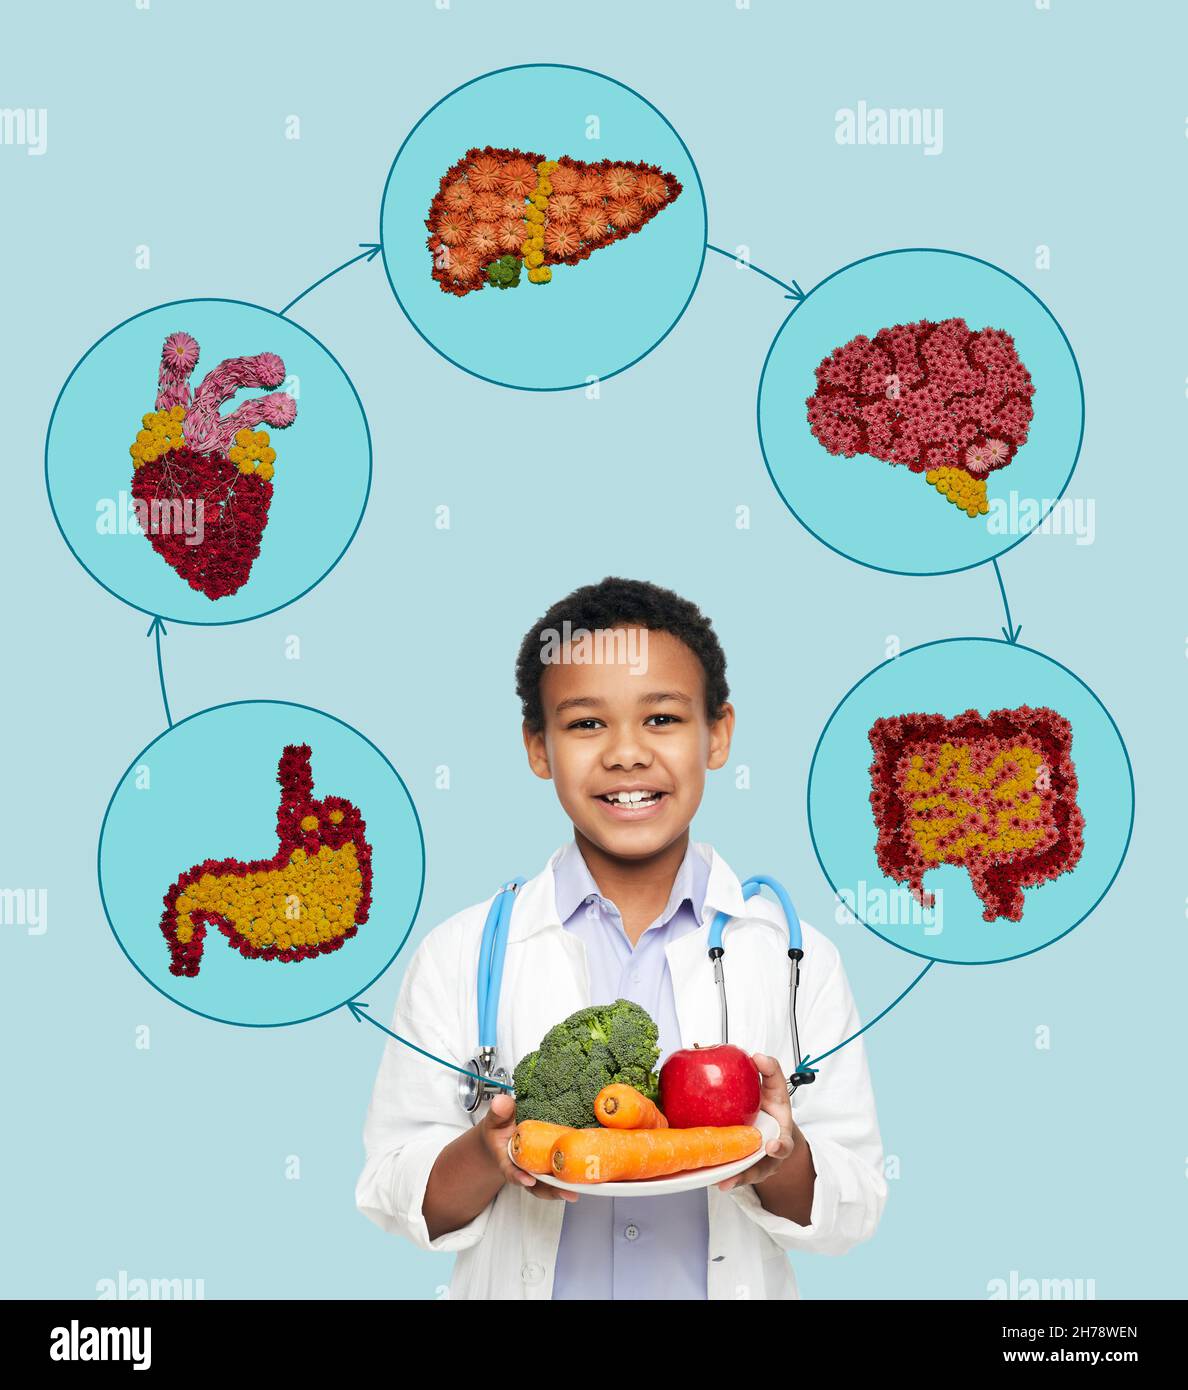 Concetto di nutrizione sana dei bambini. Il ragazzo africano americano che indossa l'uniforme del medico con le verdure e la frutta sane raccomanda l'alimento naturale per il bambino Foto Stock